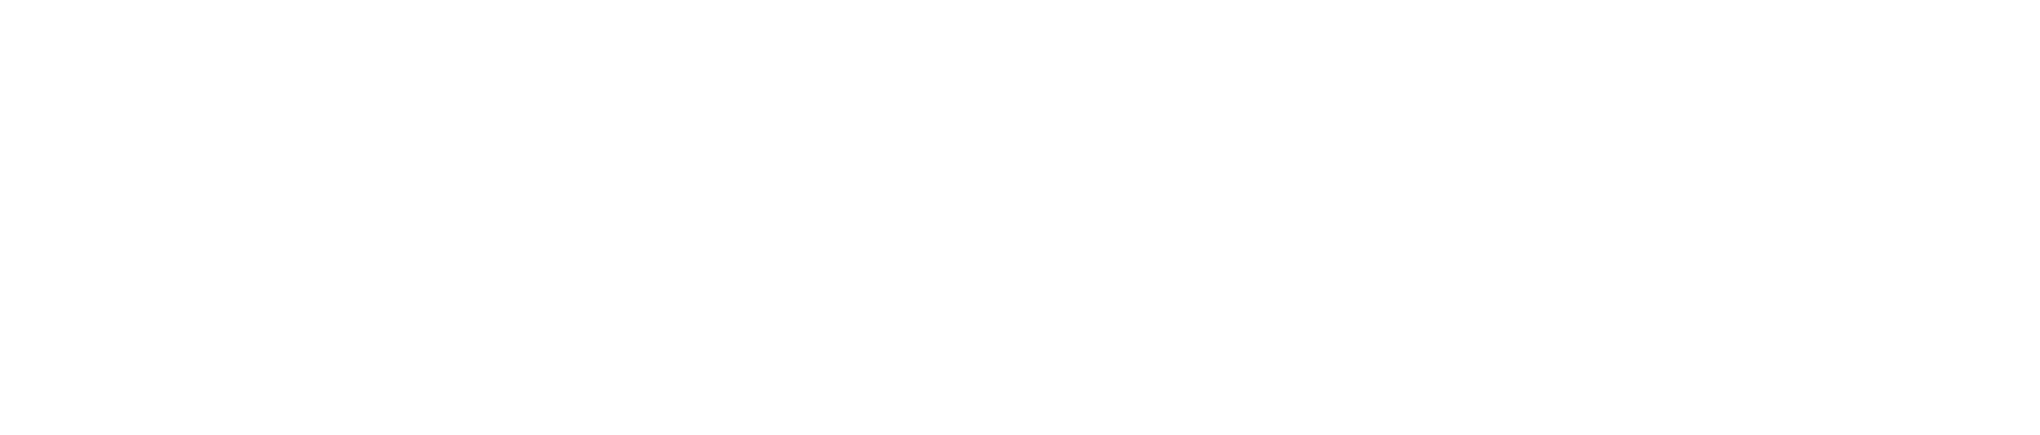 Twig Science Next Gen logo